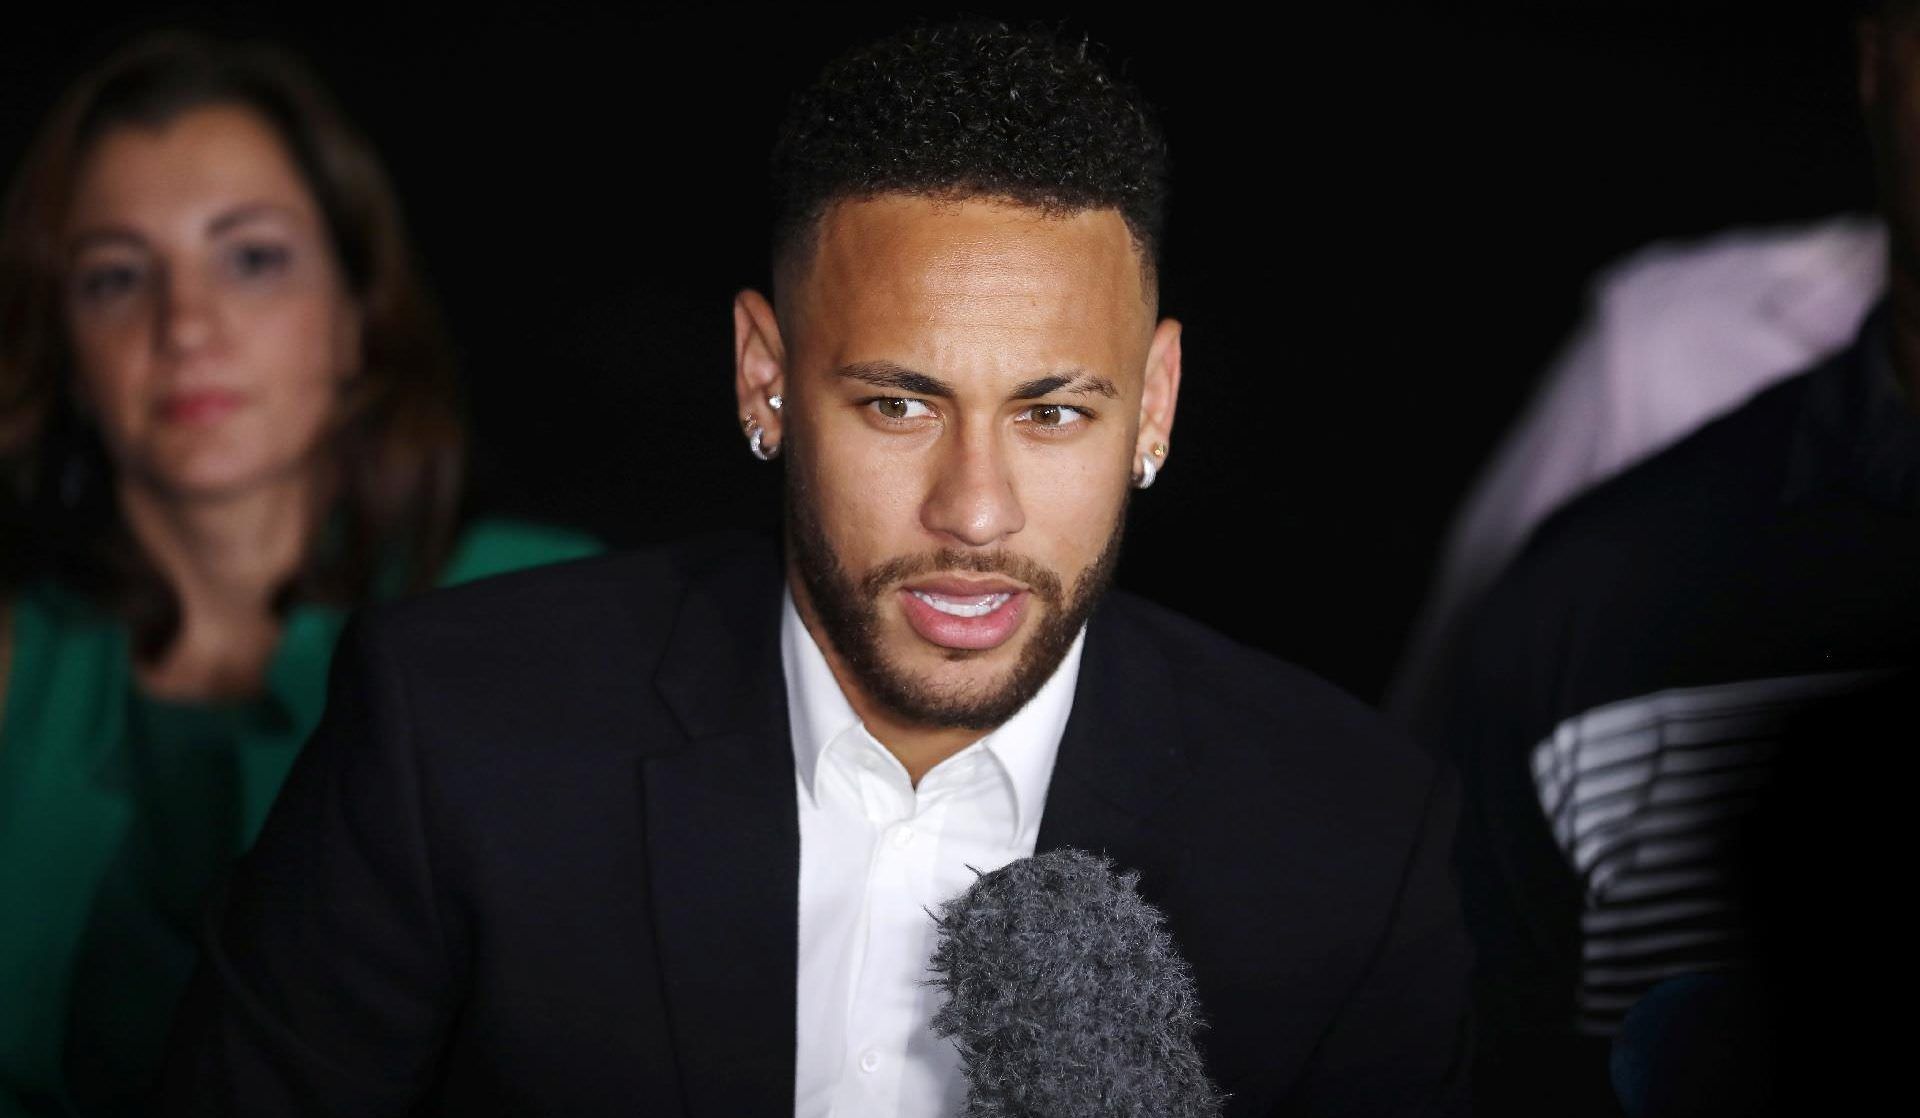 ‘A verdade aparece cedo ou tarde’, diz Neymar após depoimento em SP